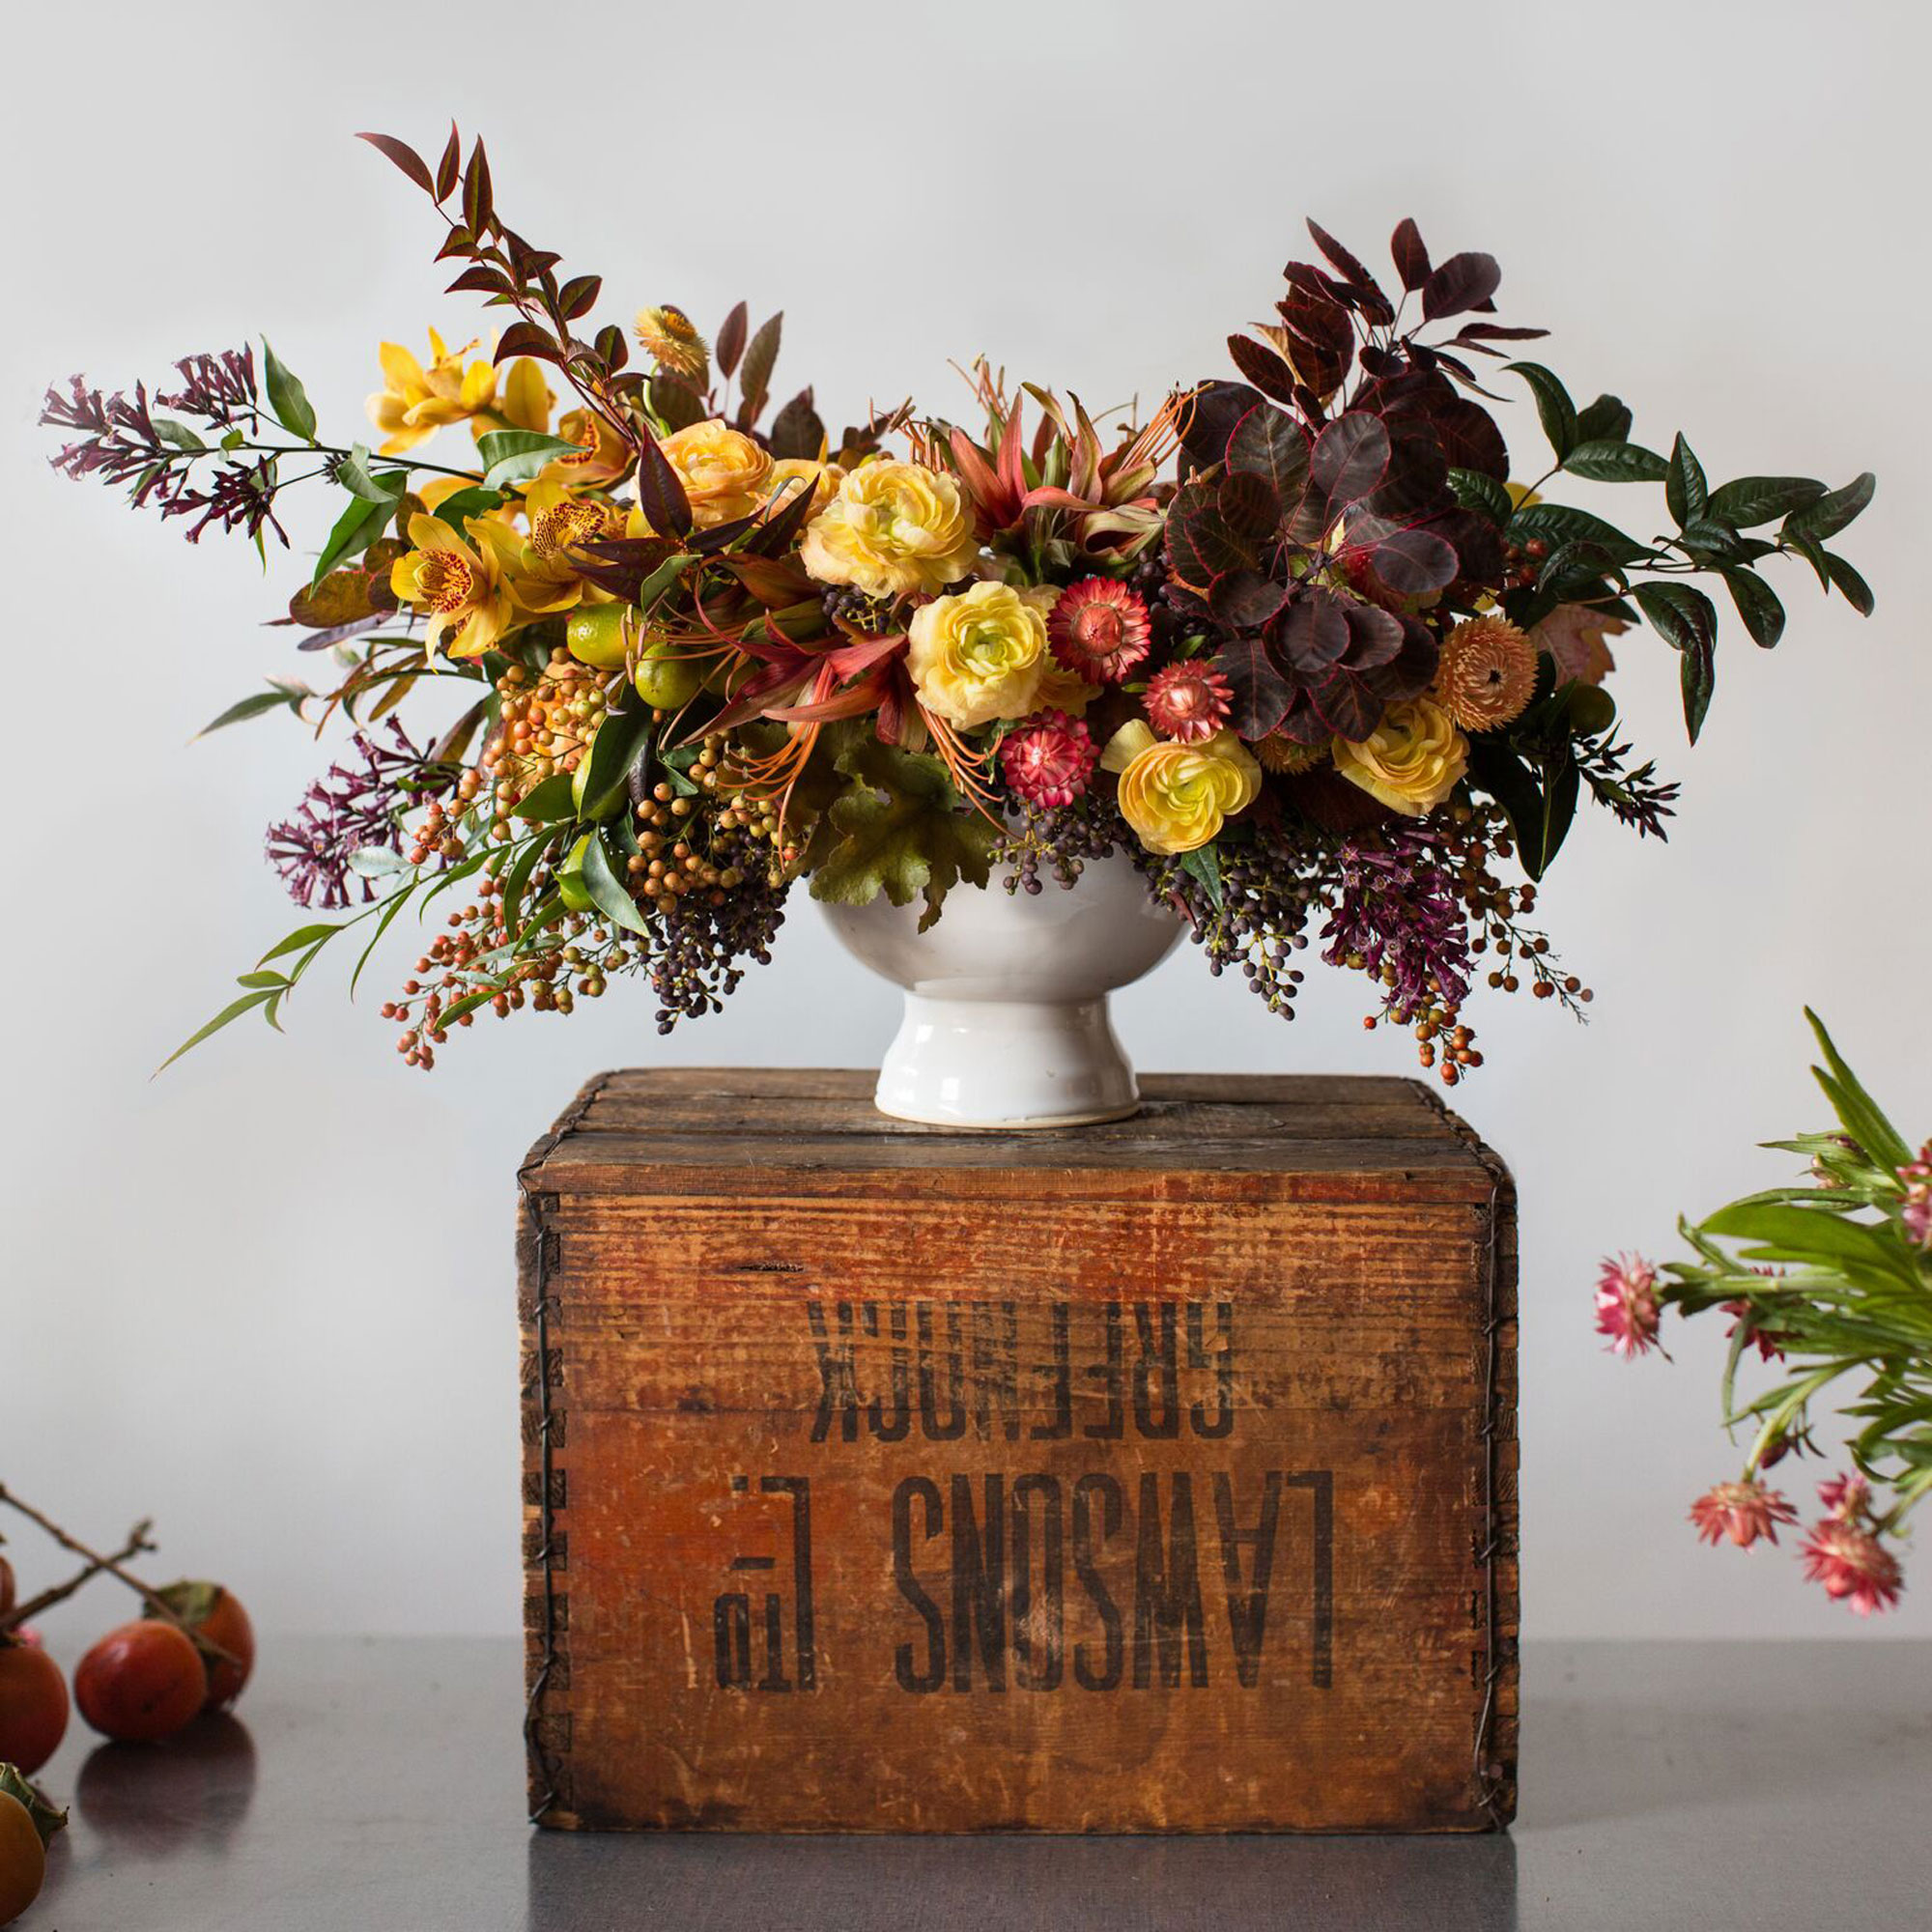 Make a Stunning Fall Floral Arrangement